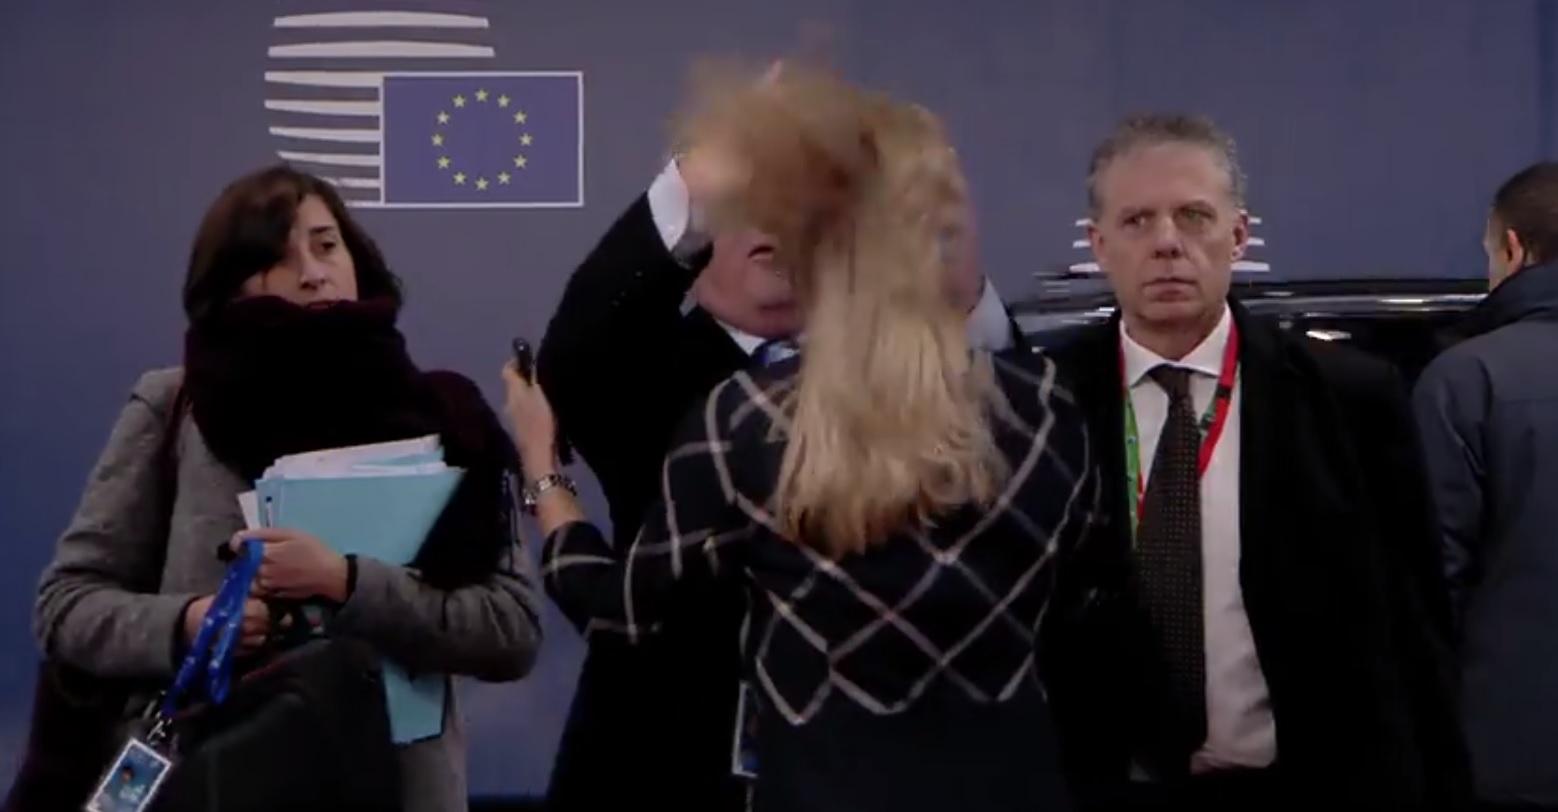 Юнкер потрепал за волосы женщину перед саммитом ЕС